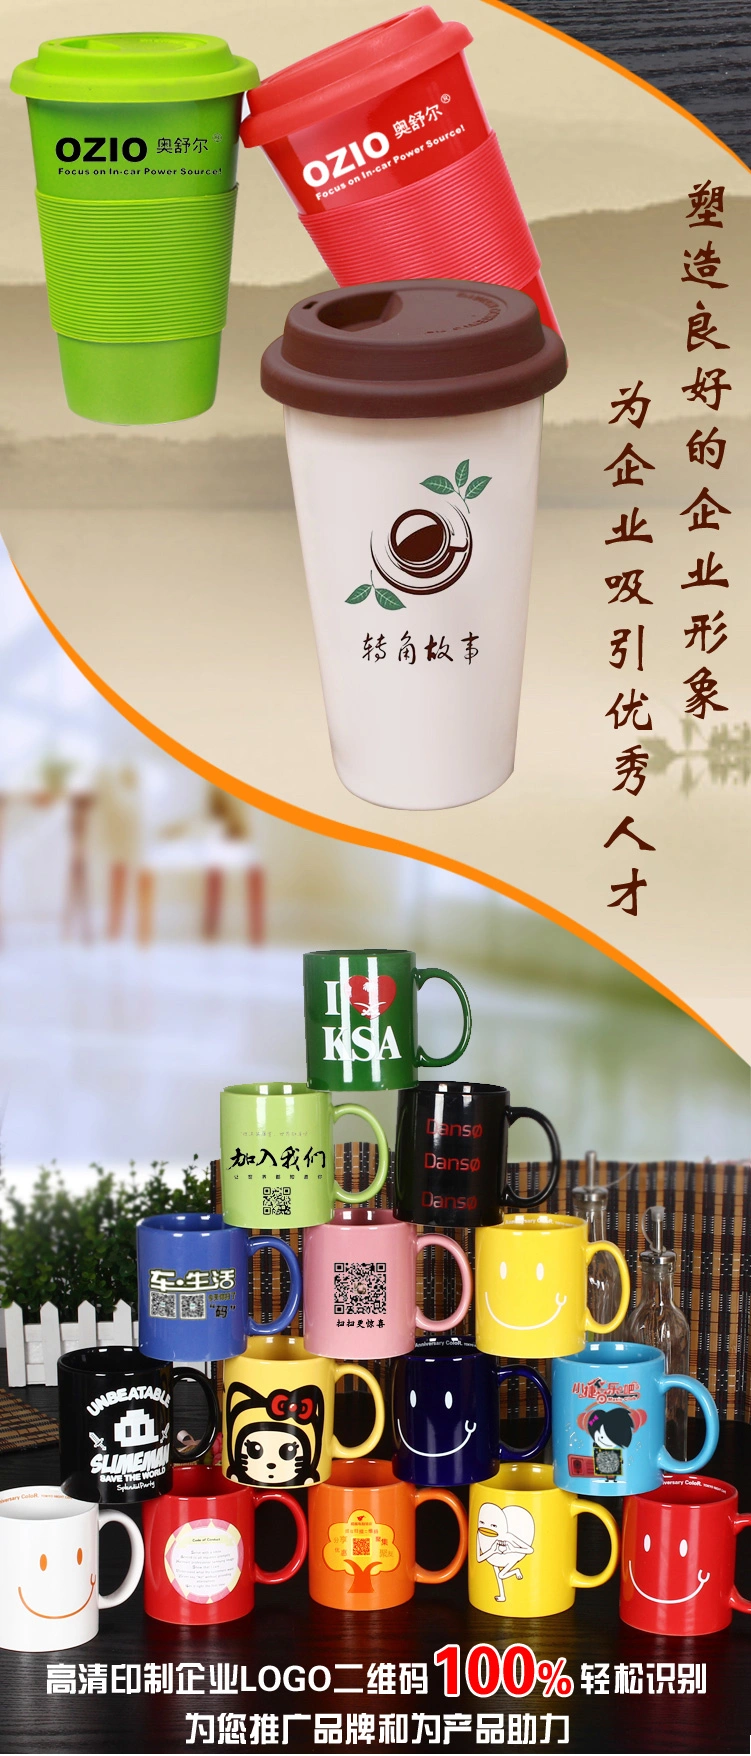 Wholesale Custom 11oz White Blank Cups Travel Coffee Mug Ceramic Sublimation Mugs Coatingsupermarket Promotion